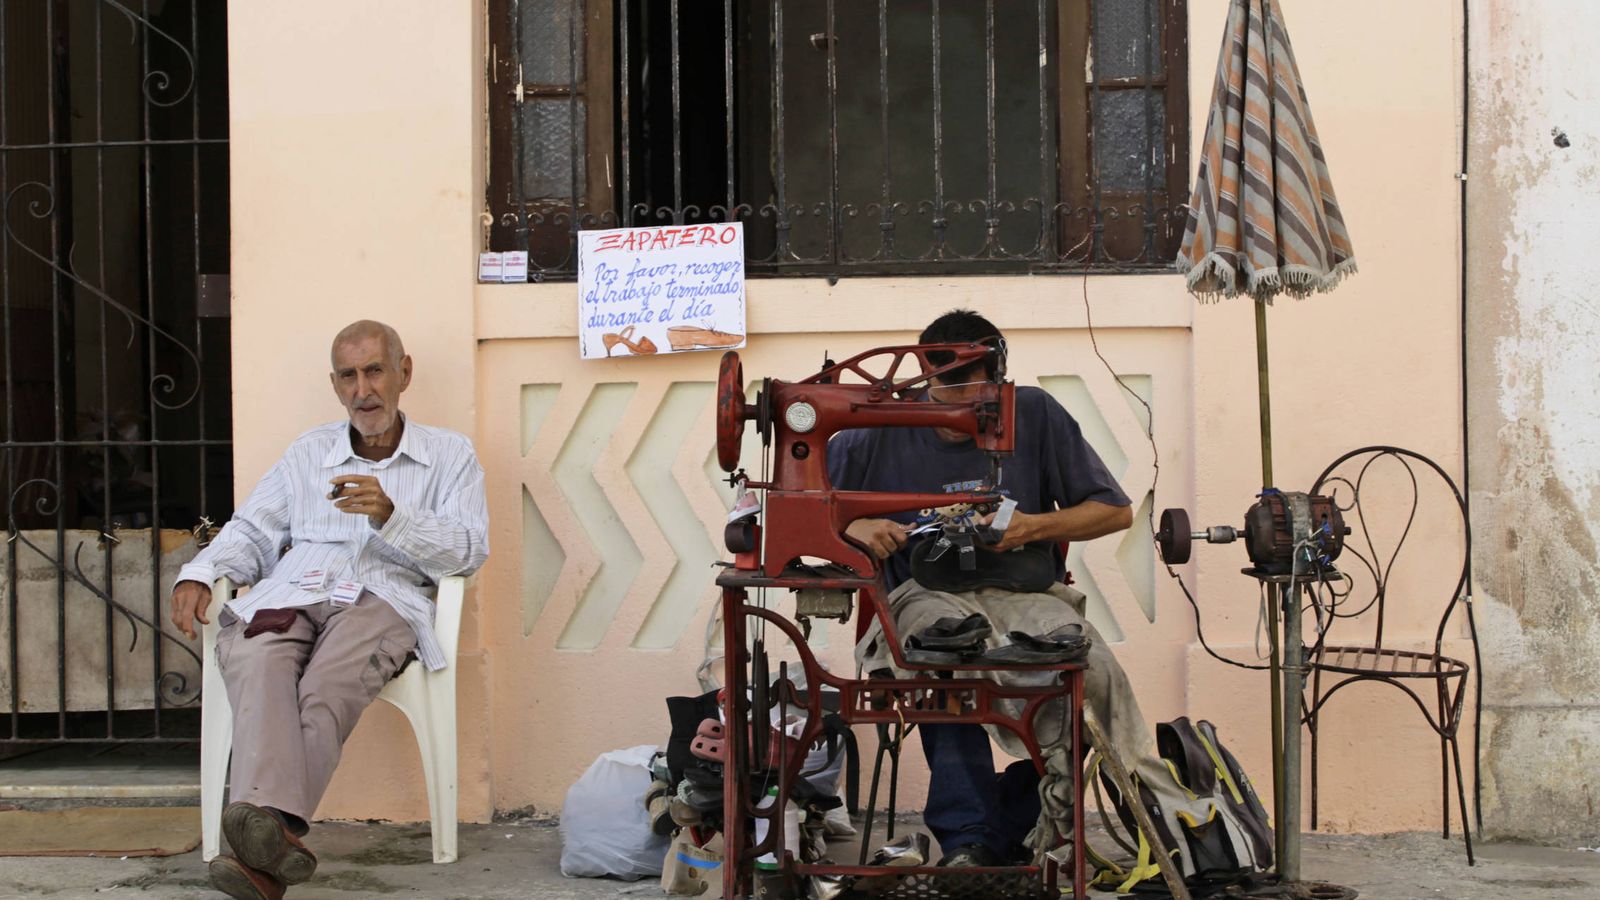 Foto: Un "cuentapropista" autorizado trabaja como zapatero en una calle de La Habana, en febrero de 2012 (Reuters)